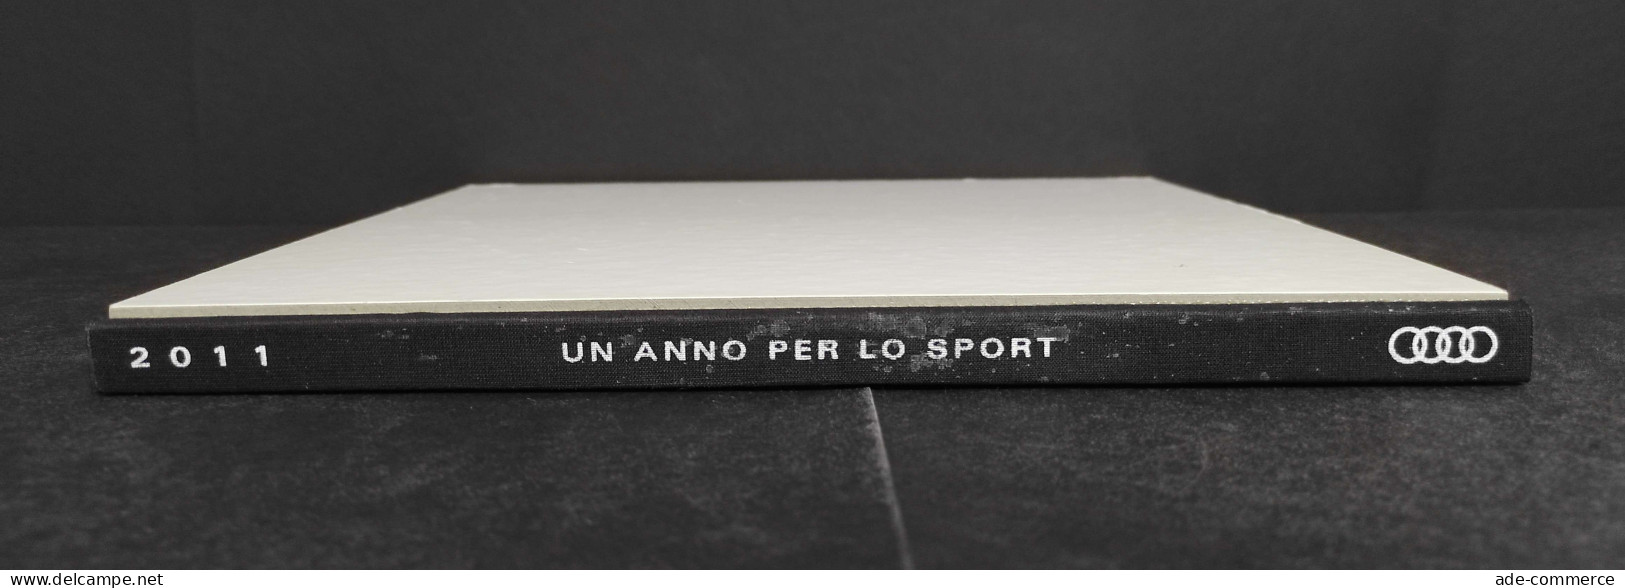 Audi - Un Anno Per Lo Sport - 2011 - Deportes